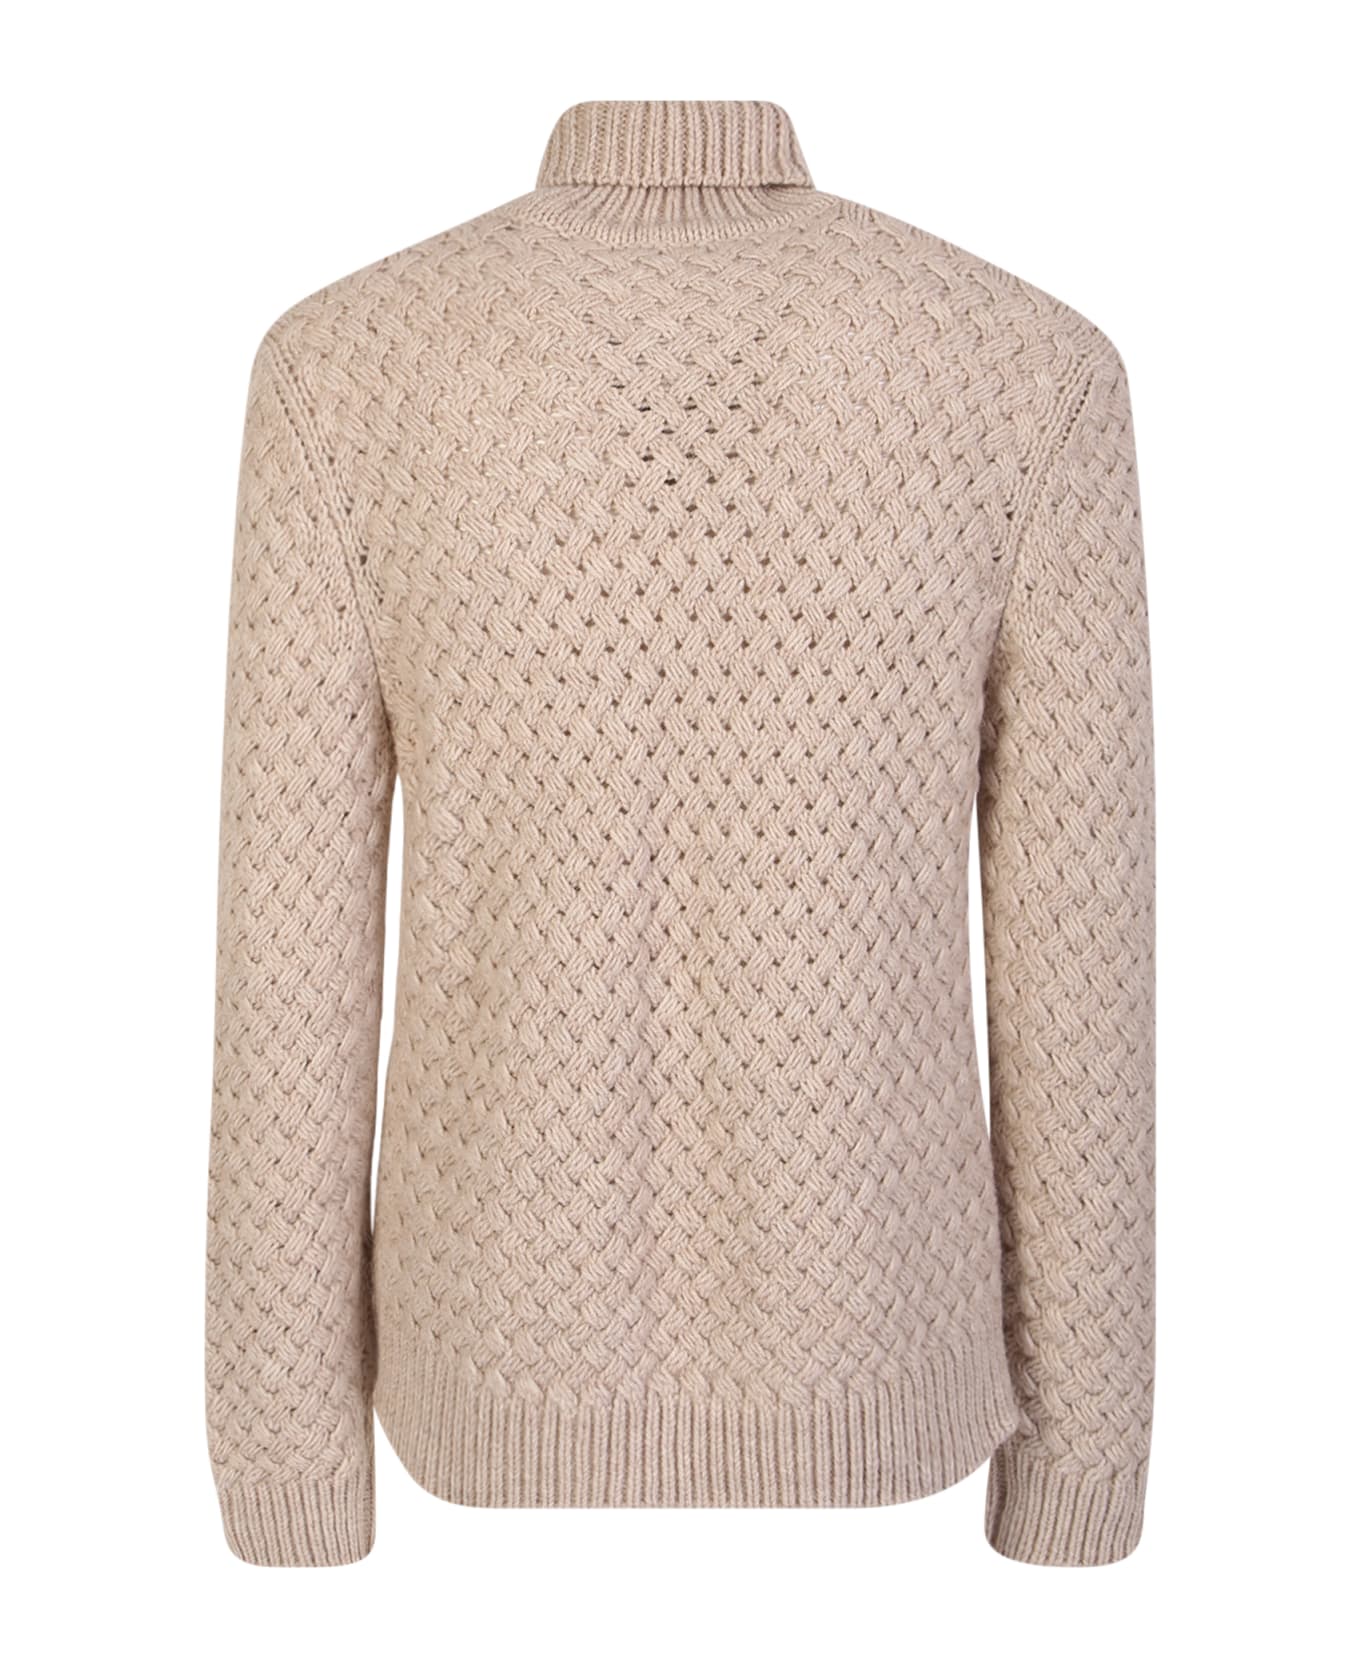 Lardini Woven Knit Pullover Ivory - White ニットウェア